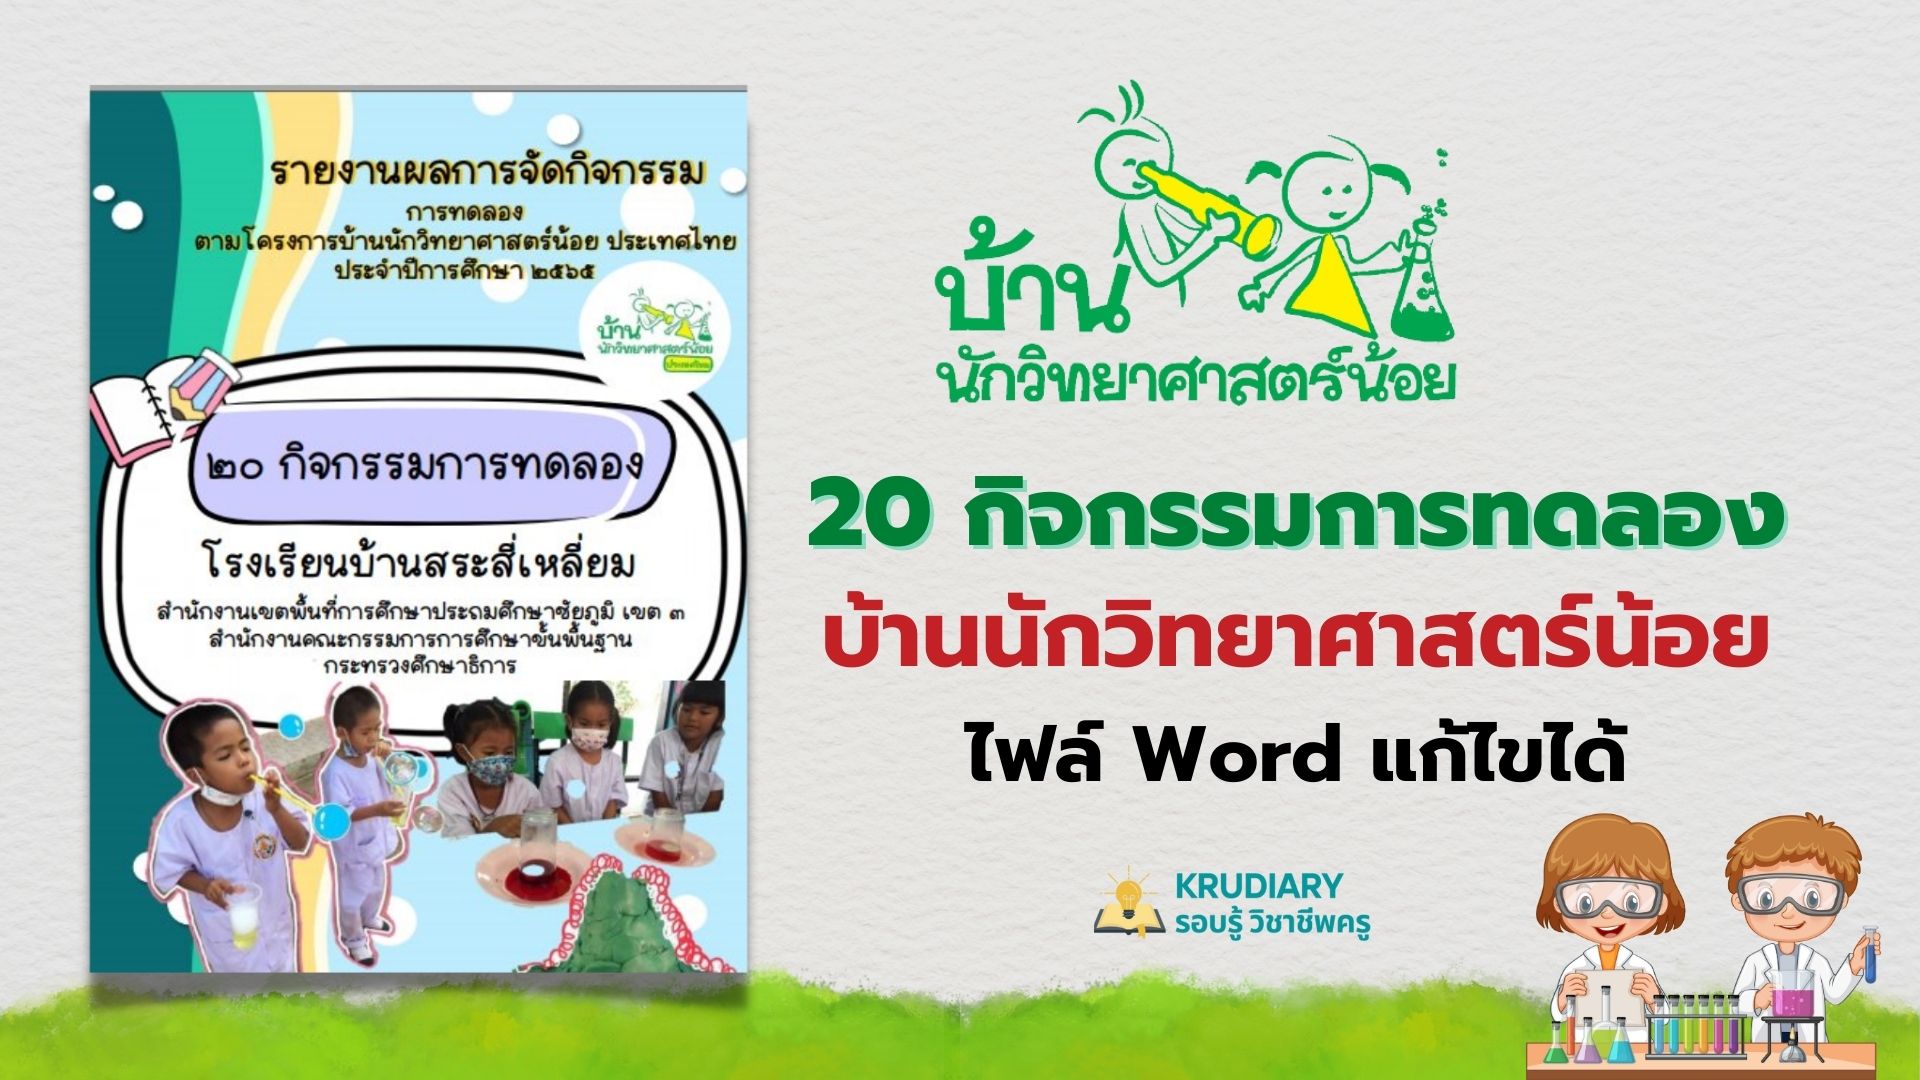 แบ่งปัน รายงานผลการจัดกิจกรรม 20 การทดลองโครงการบ้านนักวิทยศาสตร์น้อย ประเทศไทย ไฟล์เวิร์ด แก้ไขได้